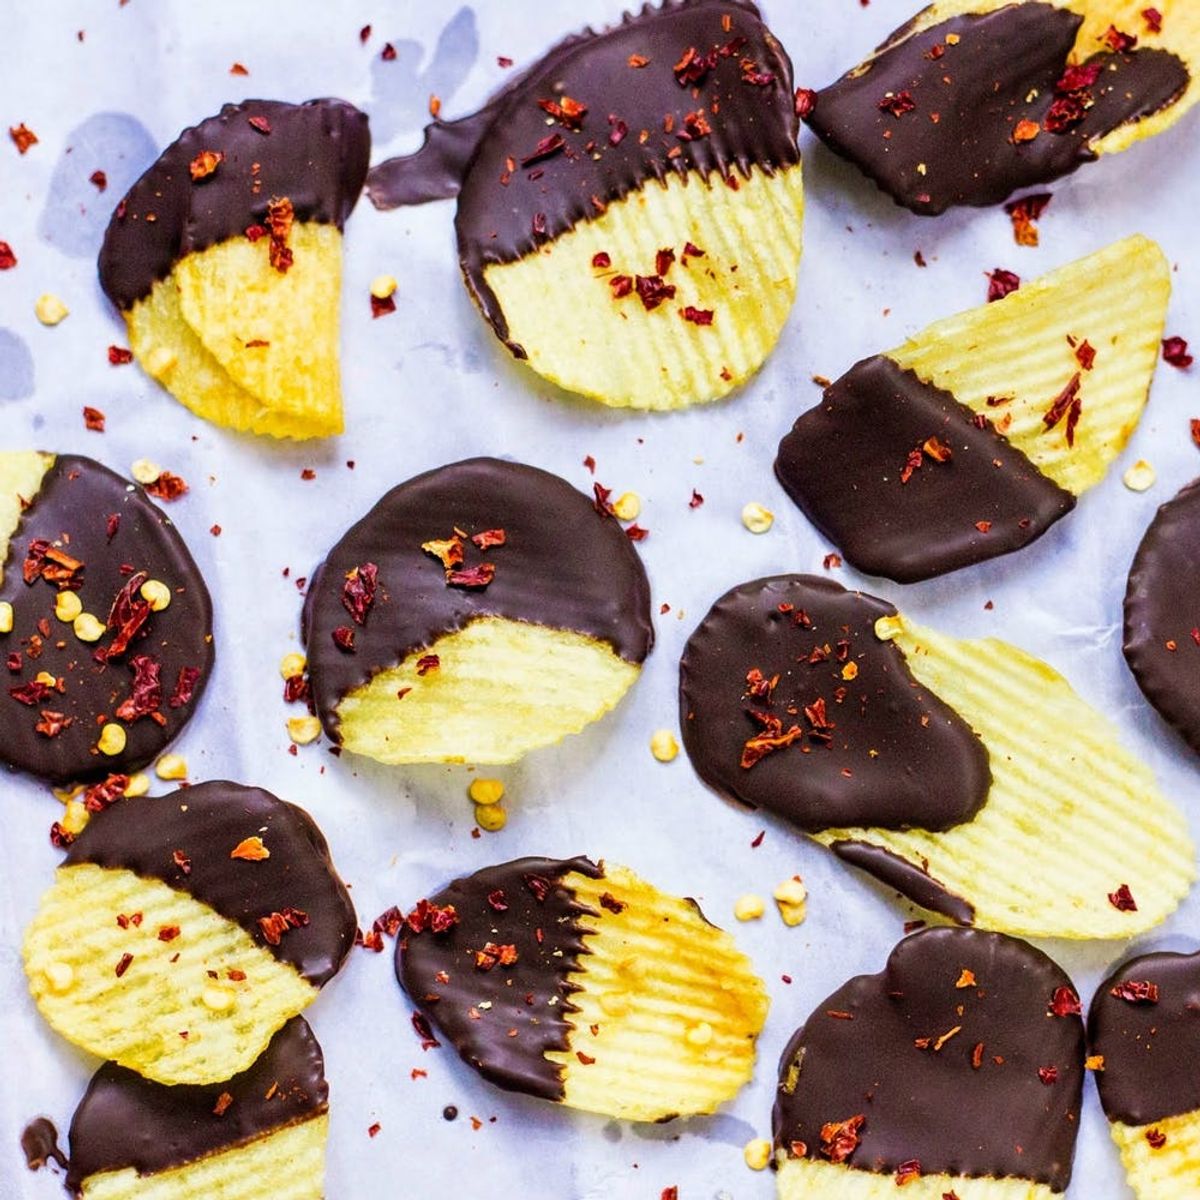 14 Savory Recipes to Satisfy Chocolate Cravings